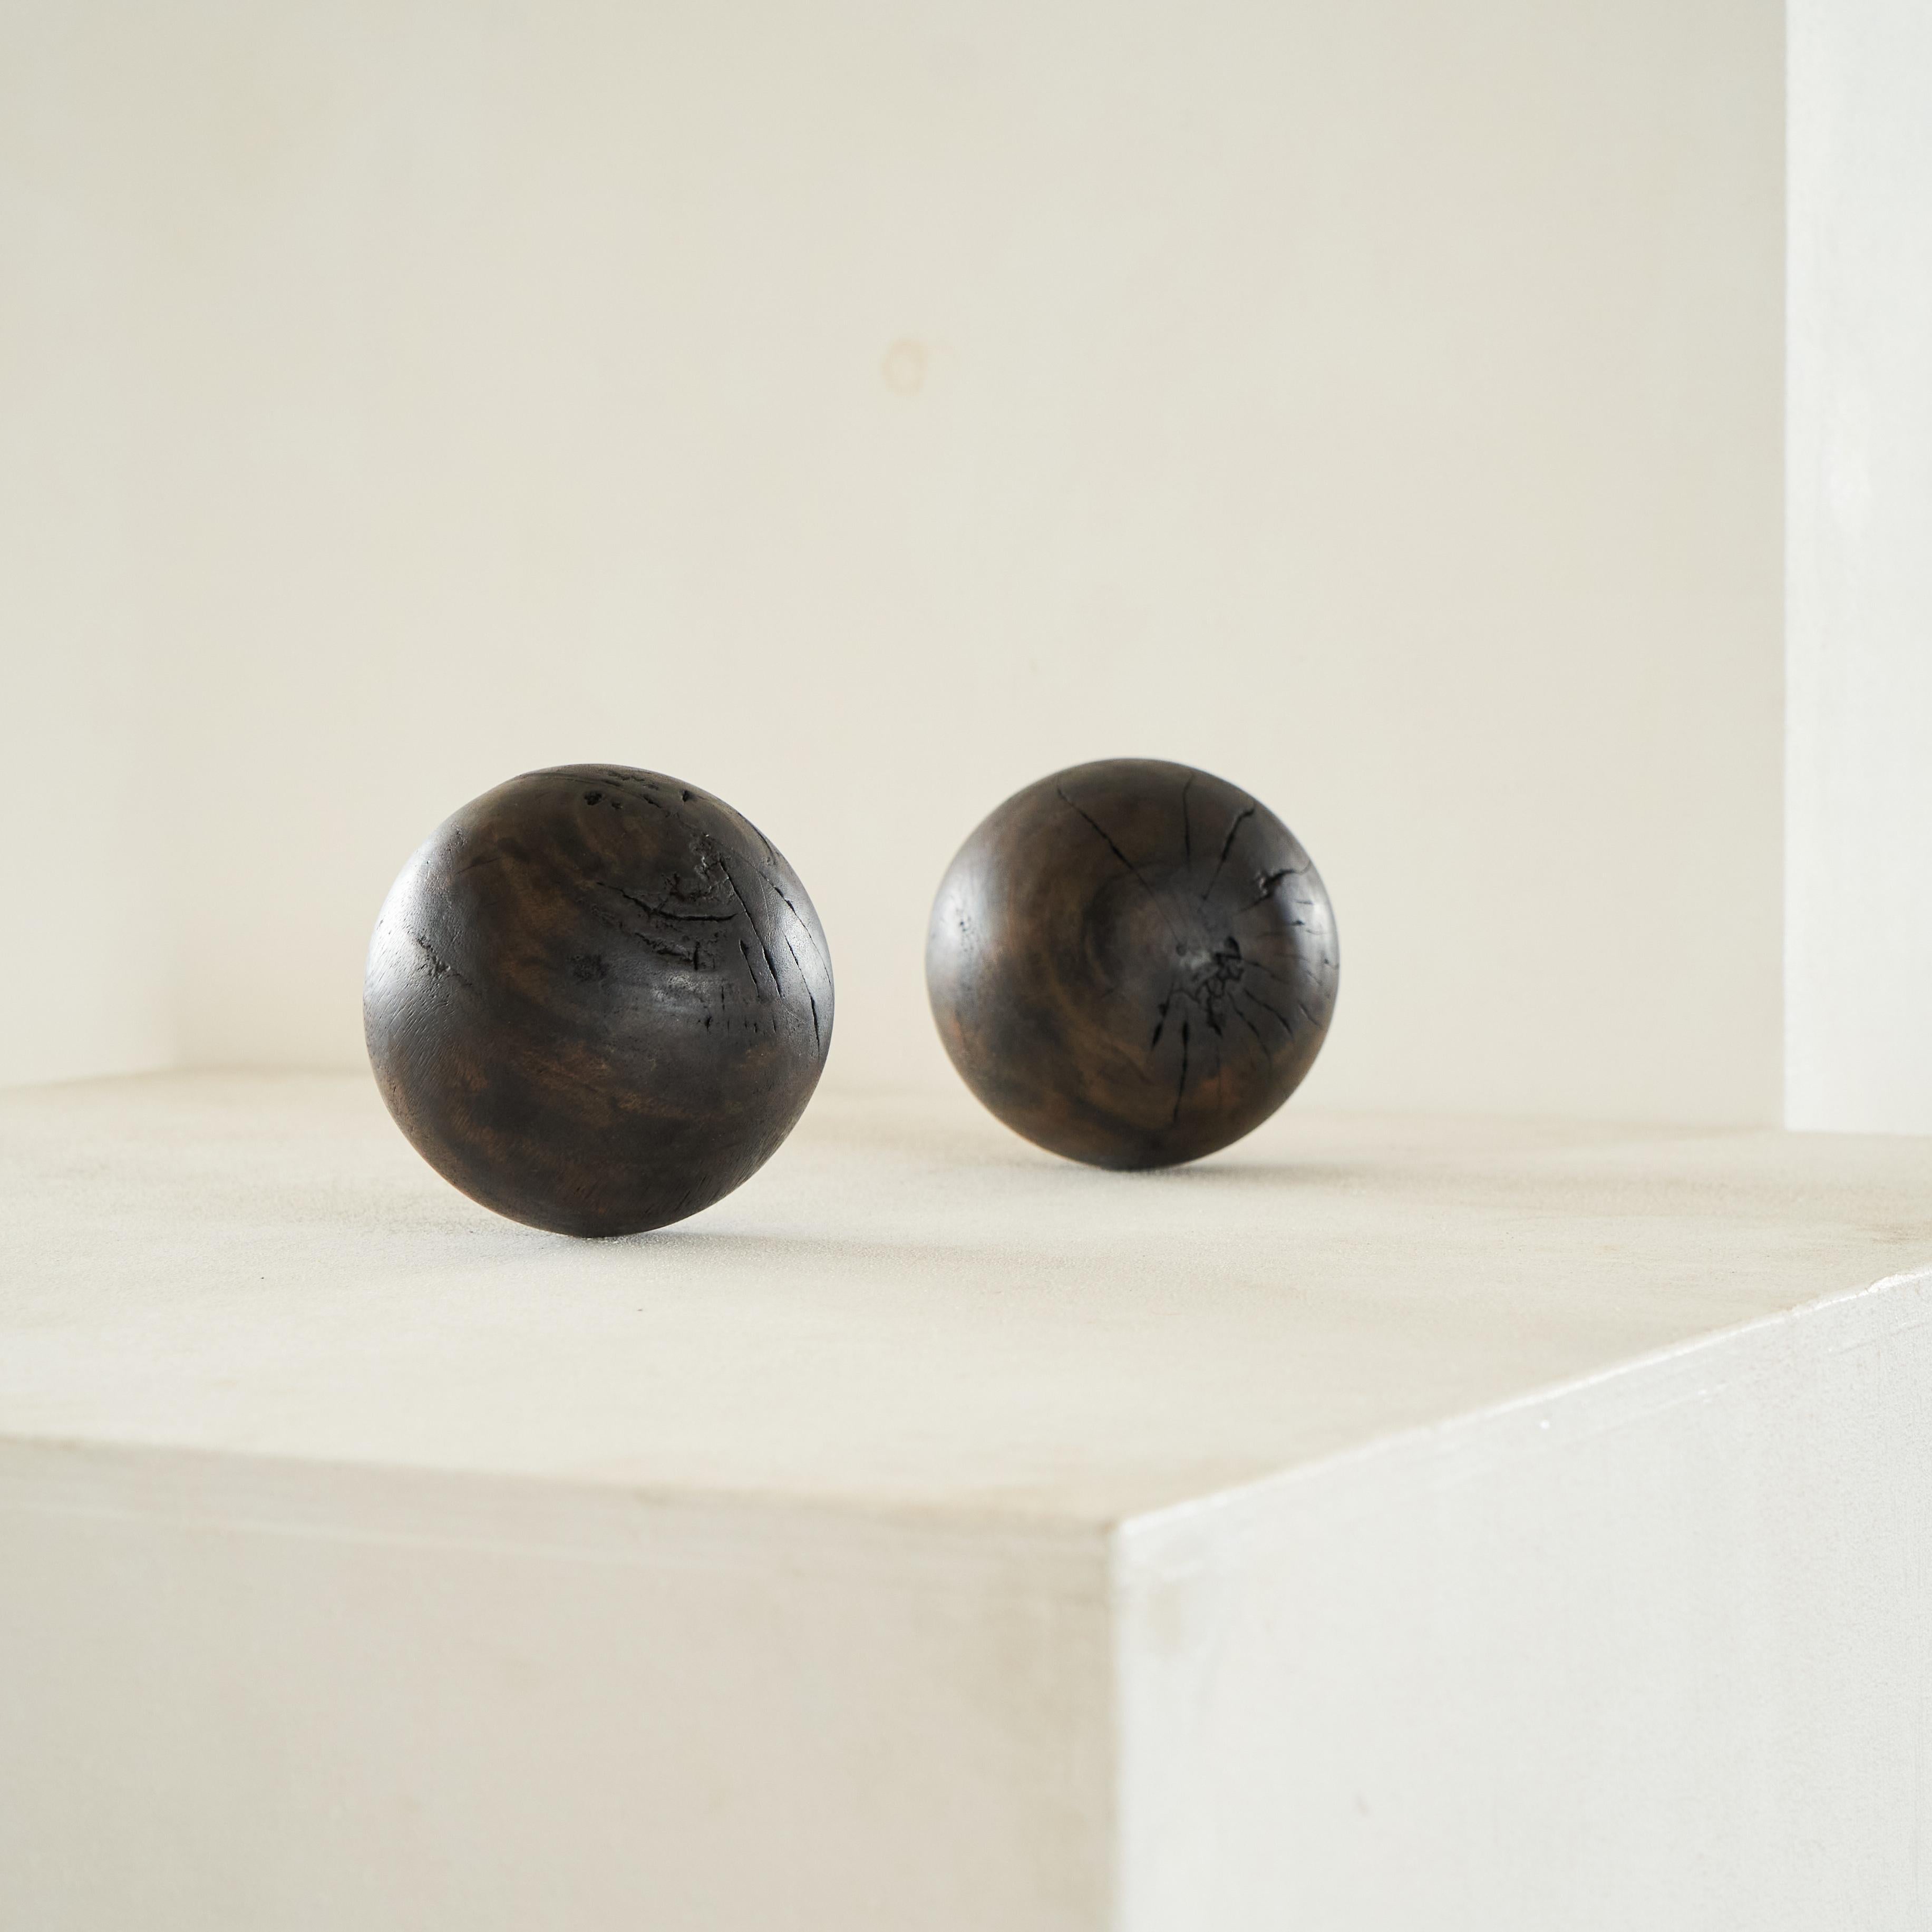 Paar antike Wabi Sabi Dekorative Kugeln aus Holz.

Wunderschönes Paar sehr dekorativer antiker Holzkugeln. Dieses handgefertigte Paar im Wabi-Sabi-Stil würde sich perfekt als Dekoration auf einem Tisch oder einer Anrichte machen. Großartiges